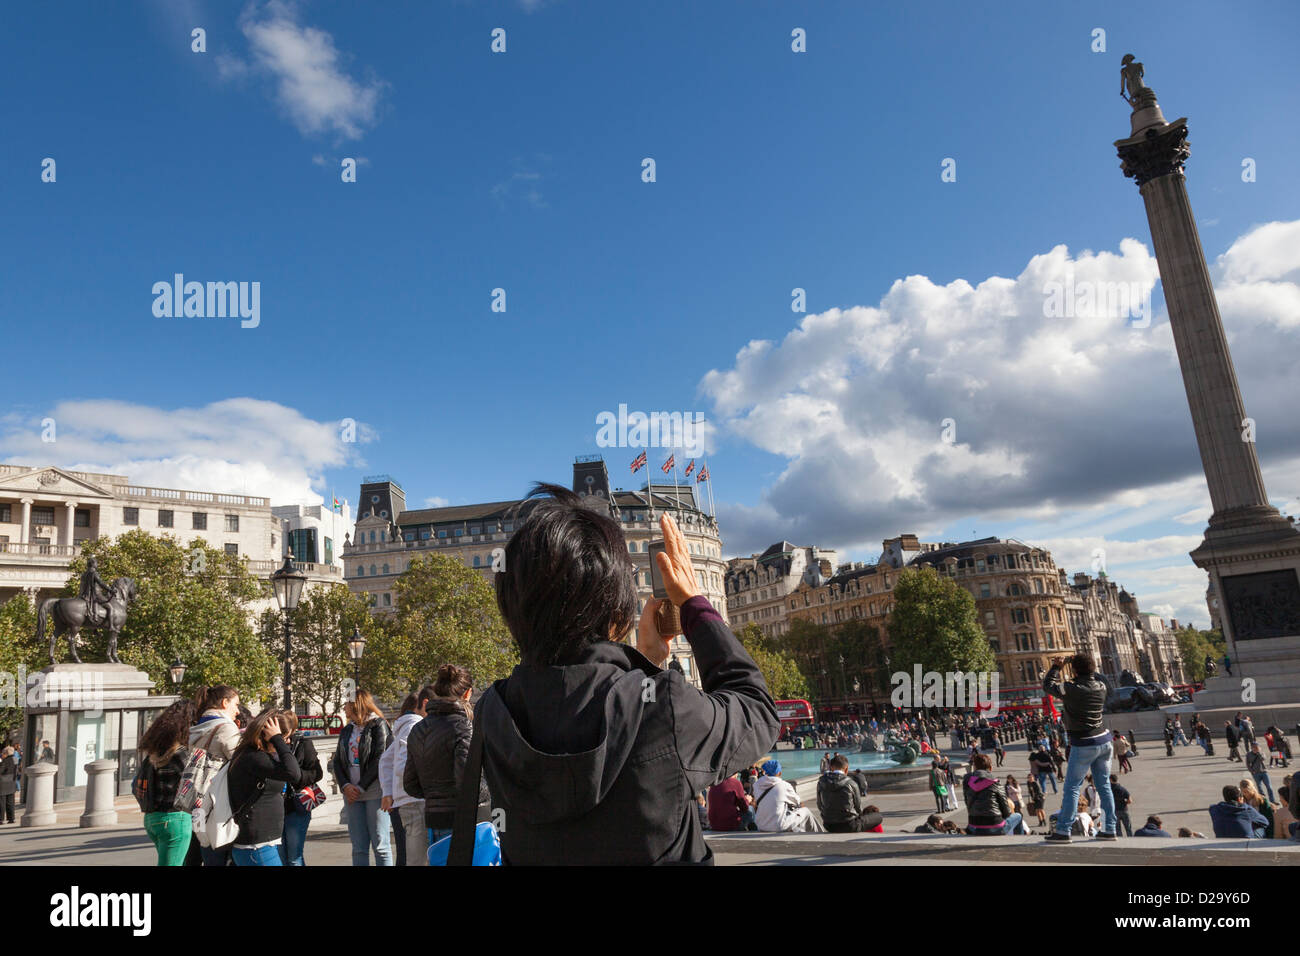 Touriste shields son appareil photo du soleil qu'elle photographie des la Colonne Nelson, Trafalgar Square, Londres. Banque D'Images